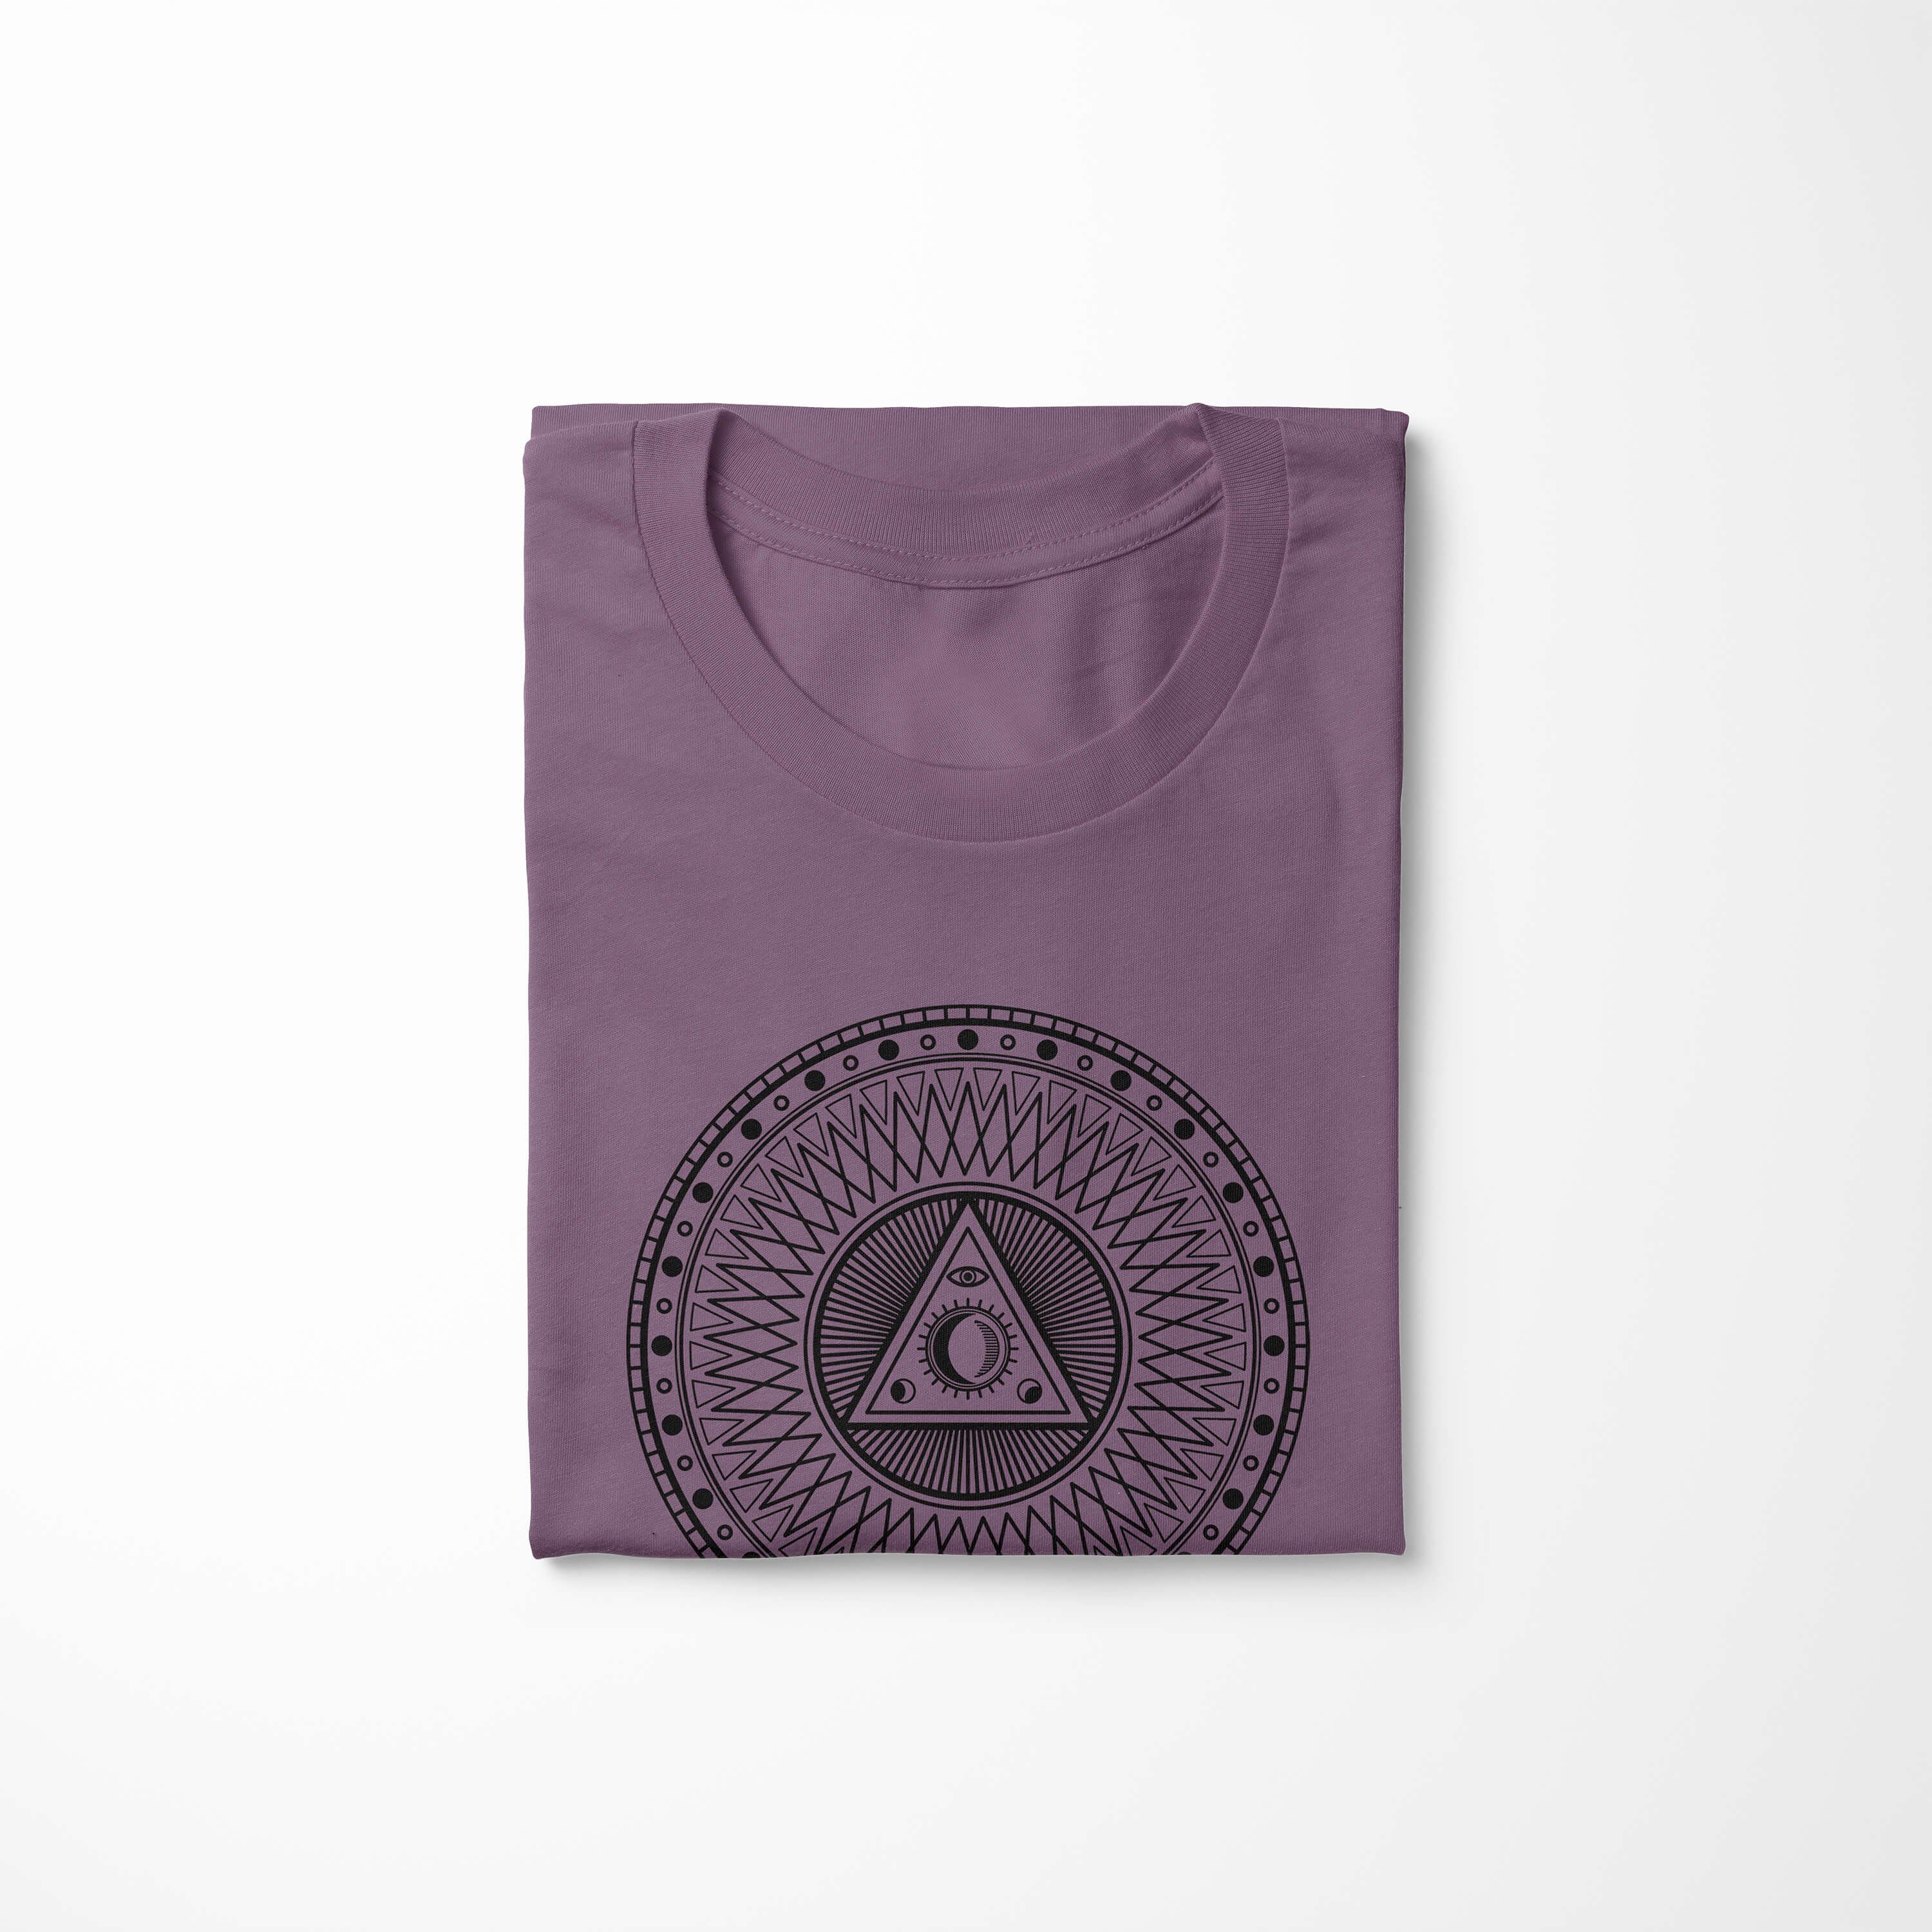 Struktur T-Shirt angenehmer Alchemy feine Premium No.0032 Sinus Shiraz Symbole Tragekomfort Serie Art T-Shirt